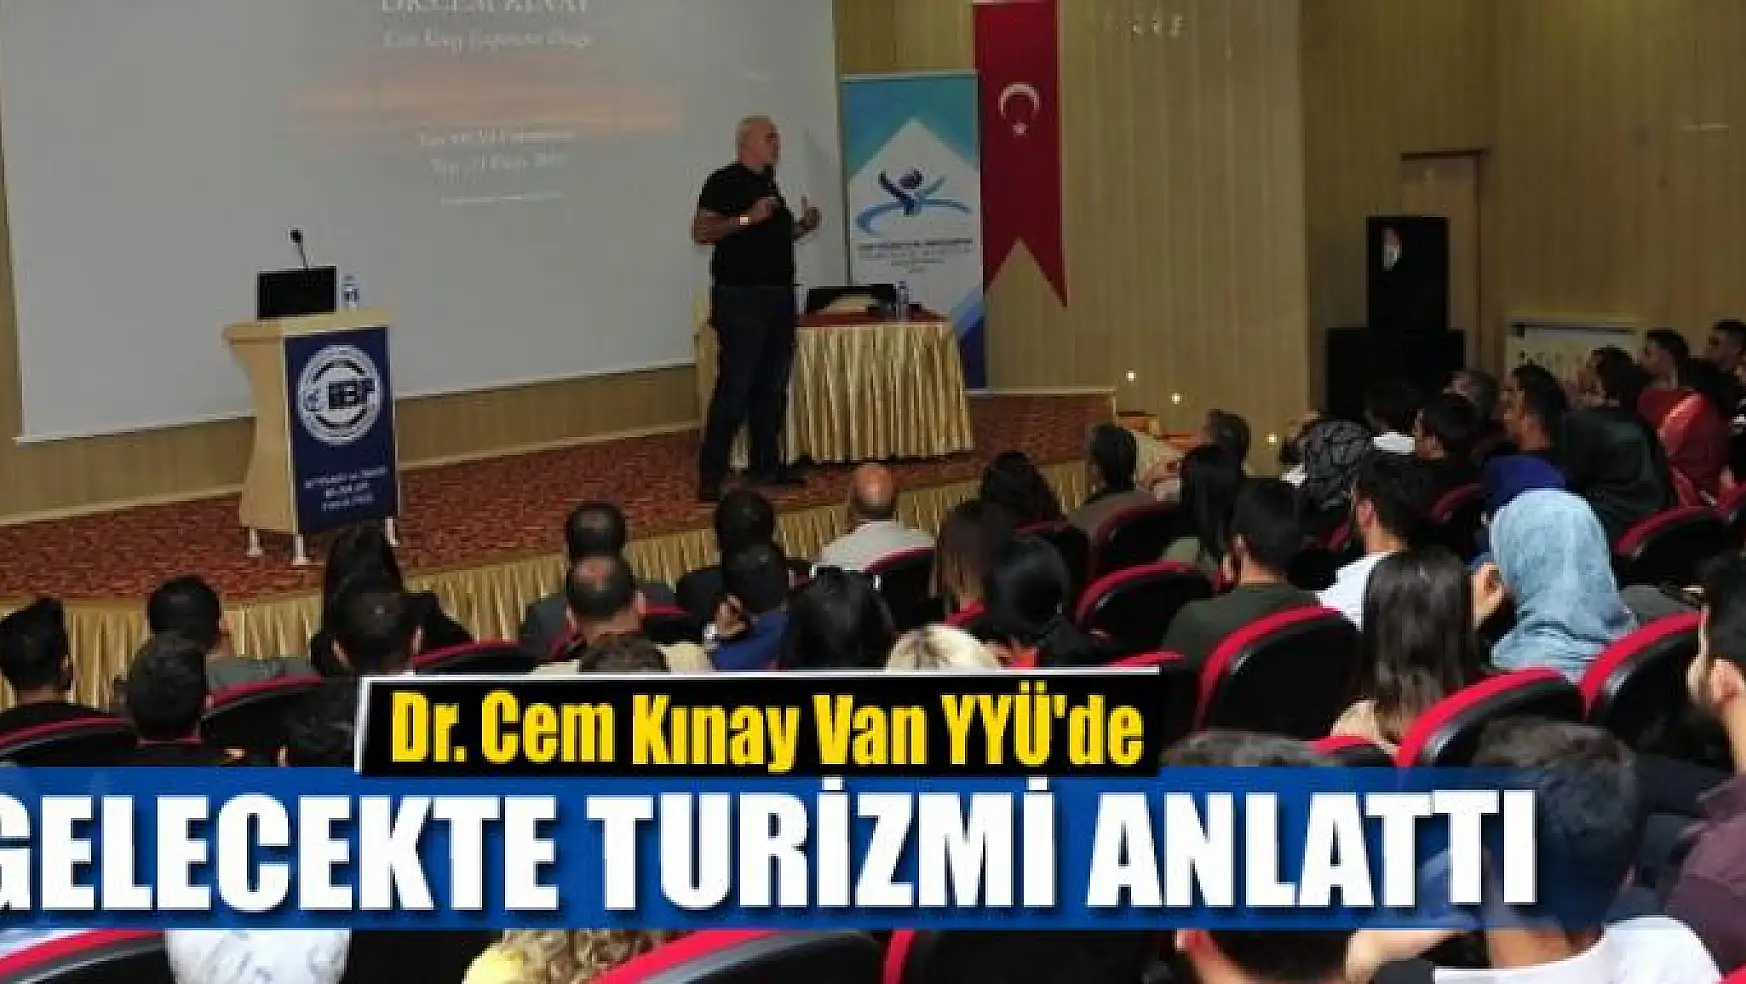 Dr. Cem Kınay Van YYÜ'de Gelecekte Turizmi anlattı